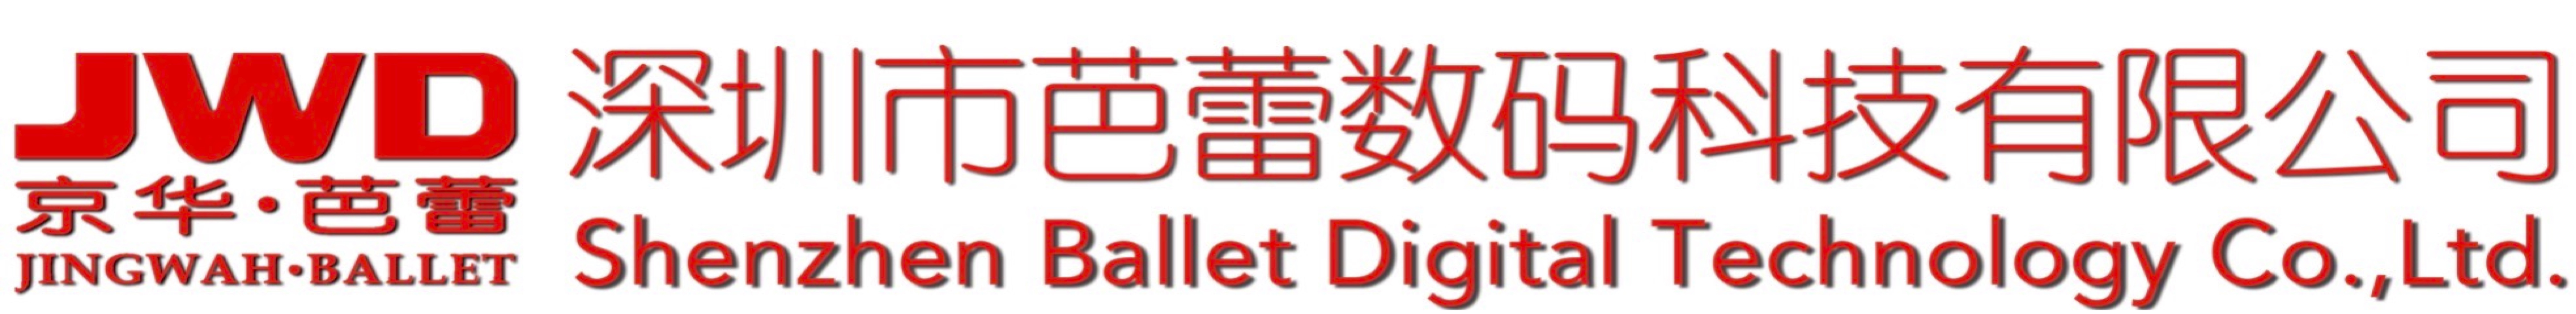  深圳芭蕾数码科技有限公司